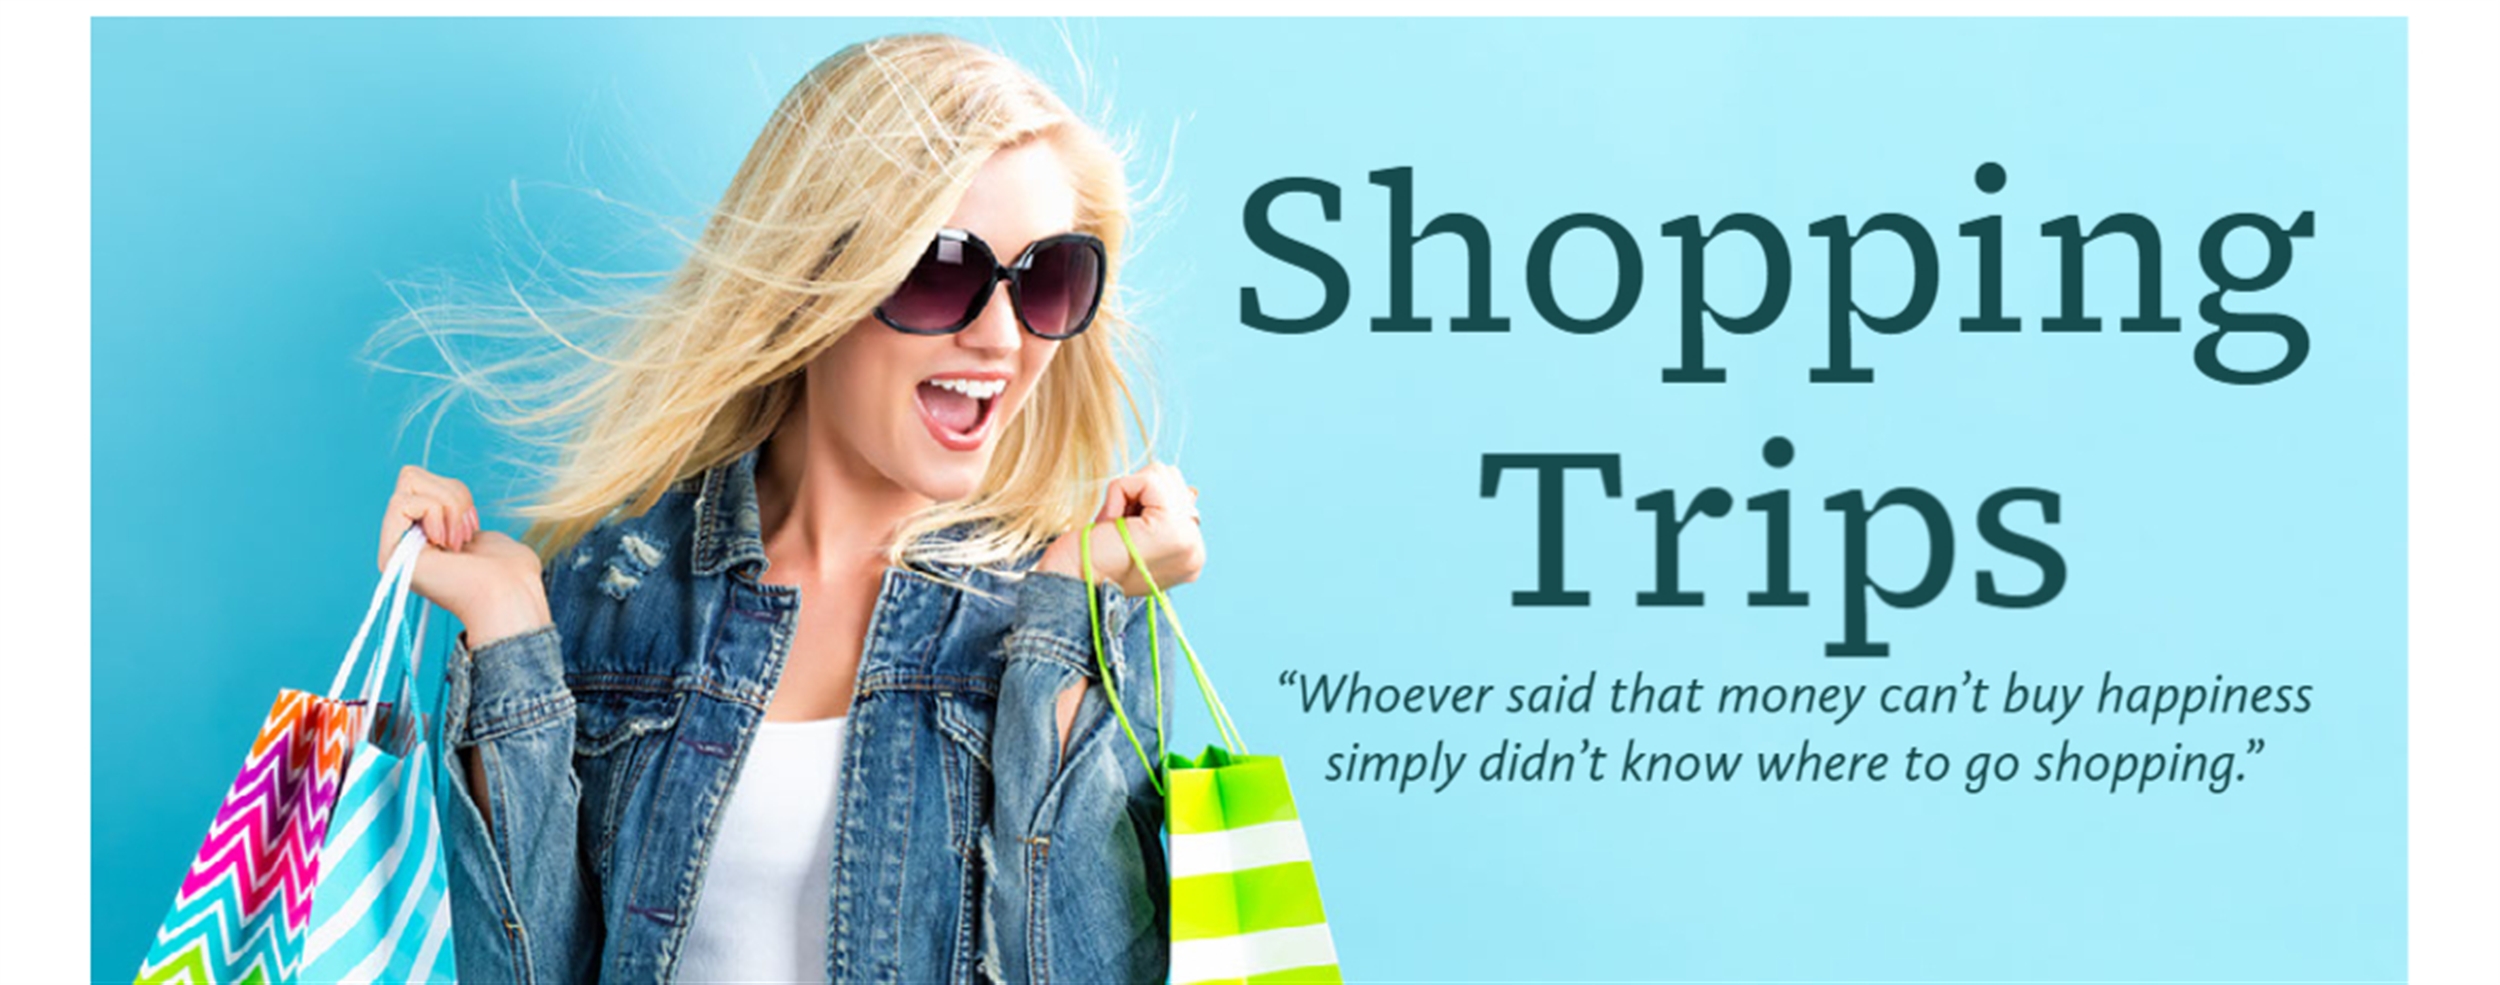 shopping trips banner.jpg